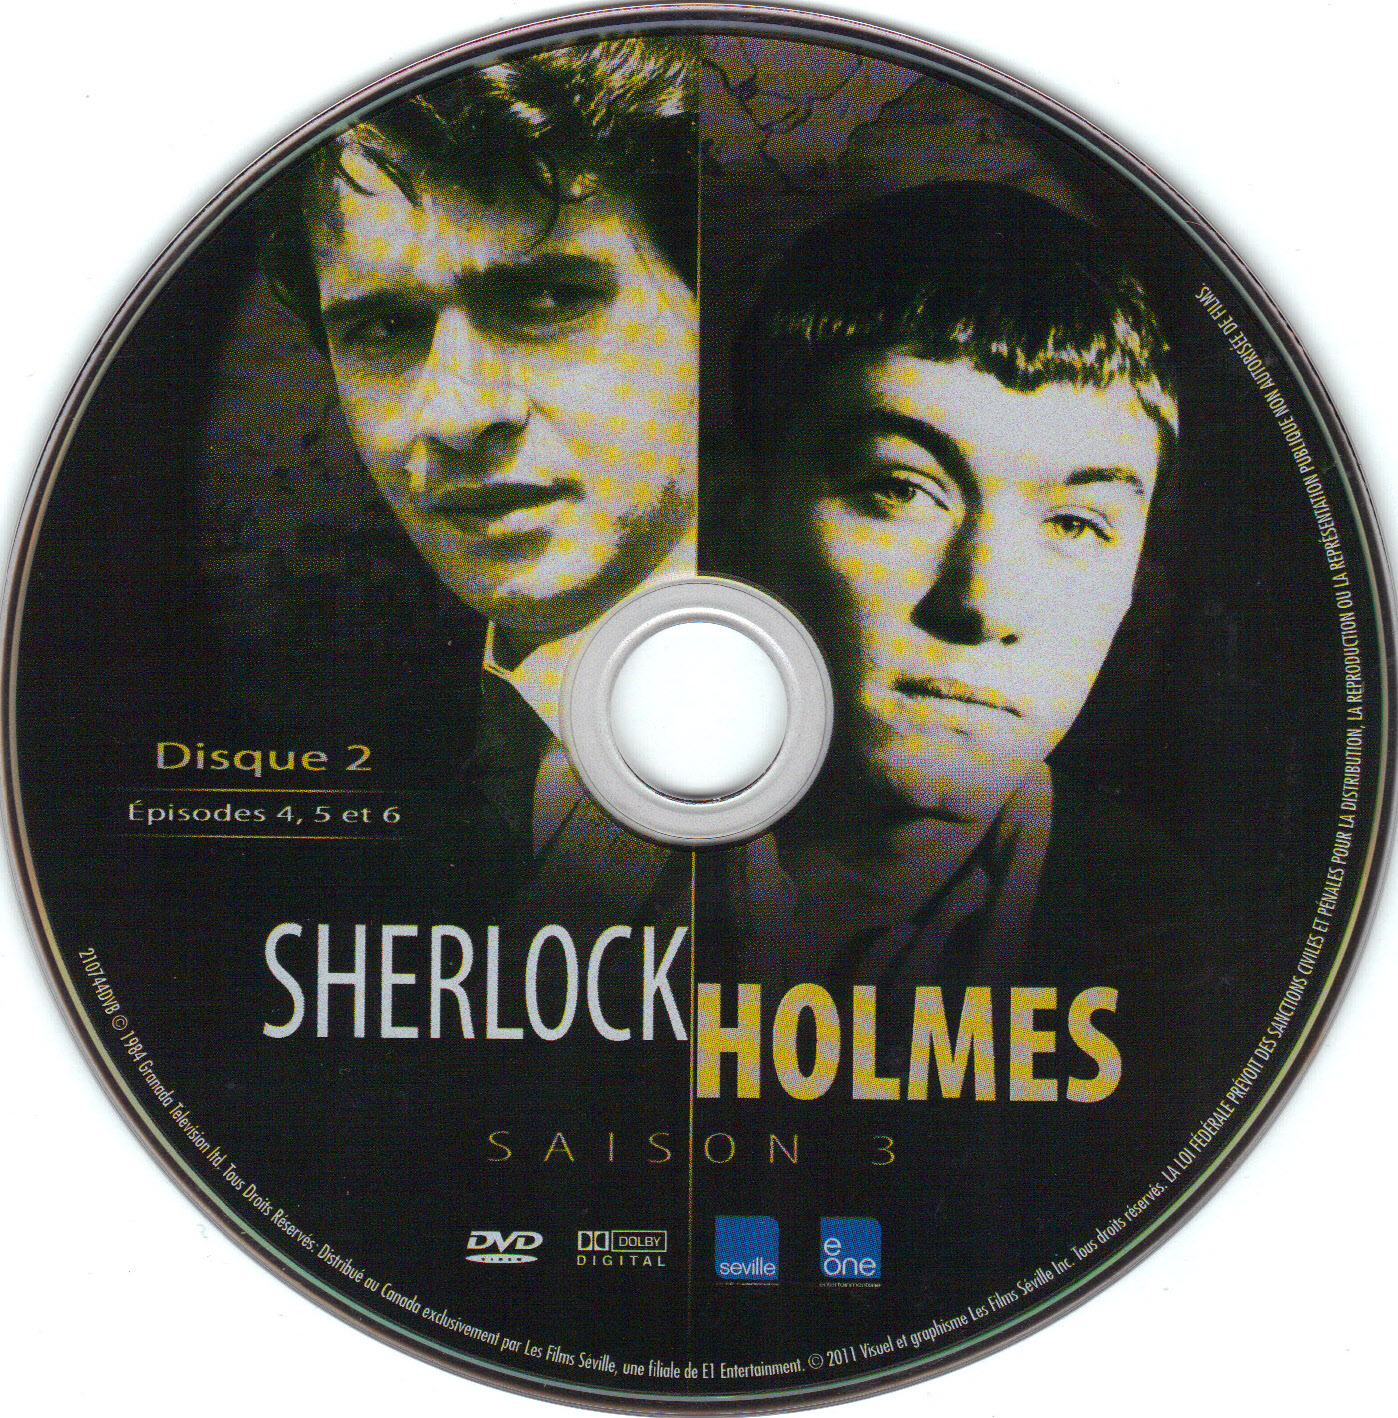 Sherlock Holmes Saison 3 Disc 2